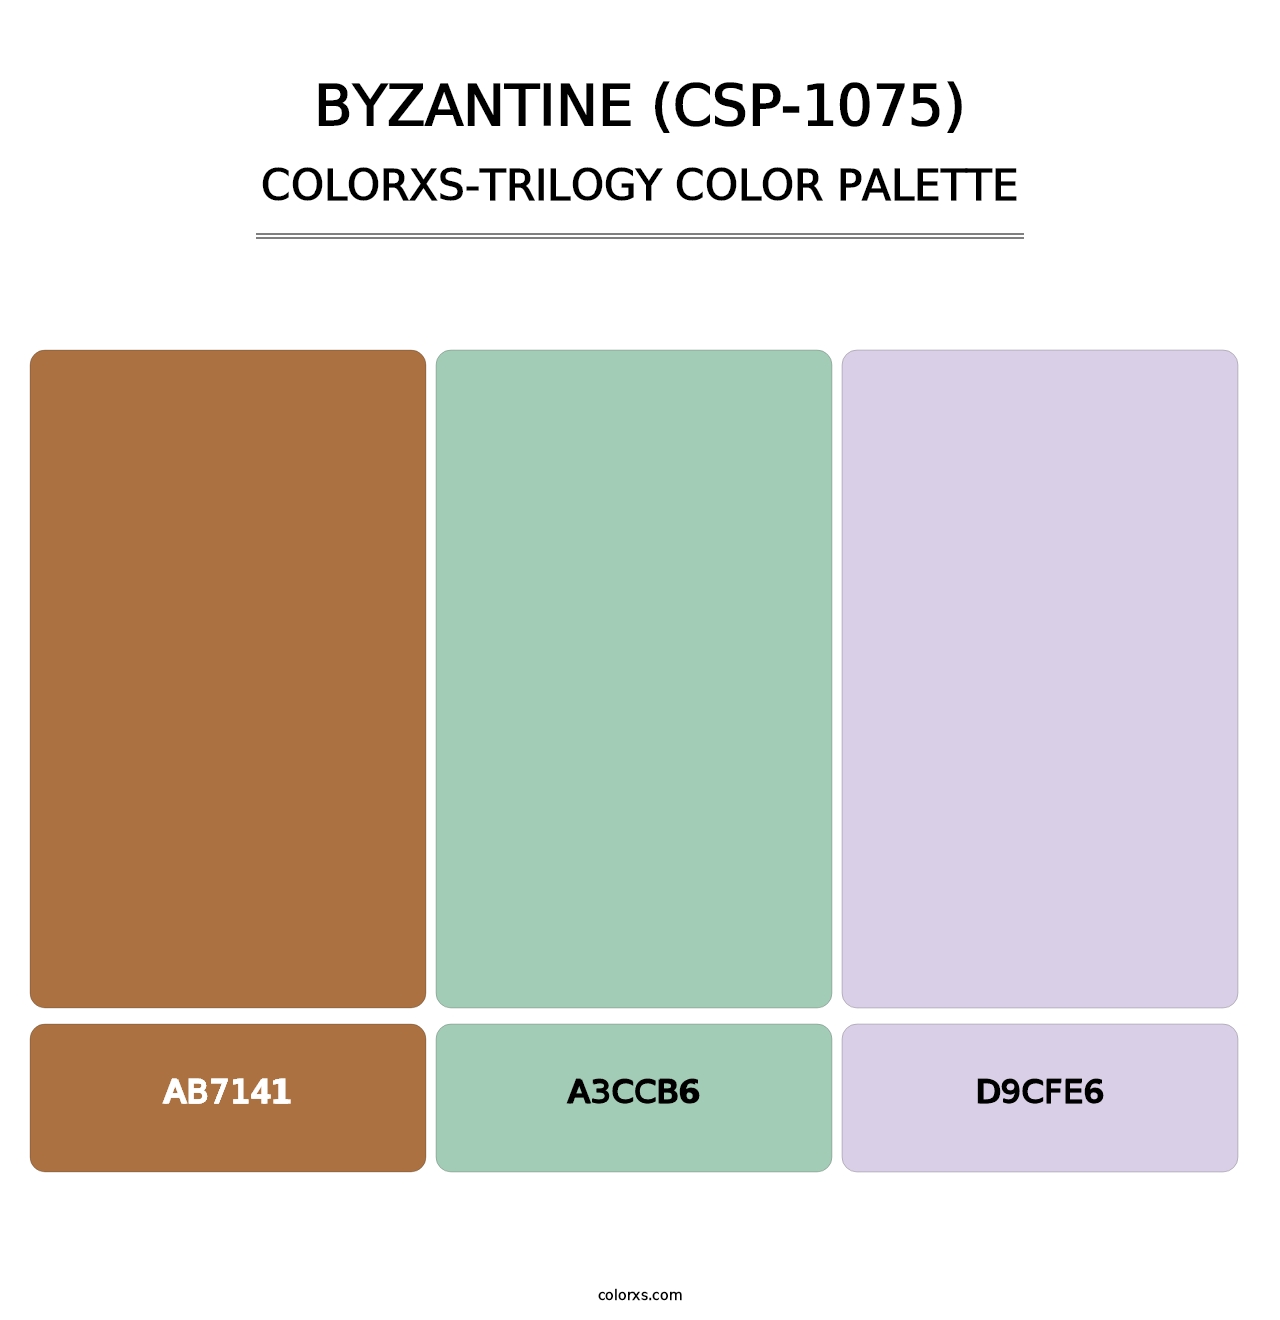 Byzantine (CSP-1075) - Colorxs Trilogy Palette